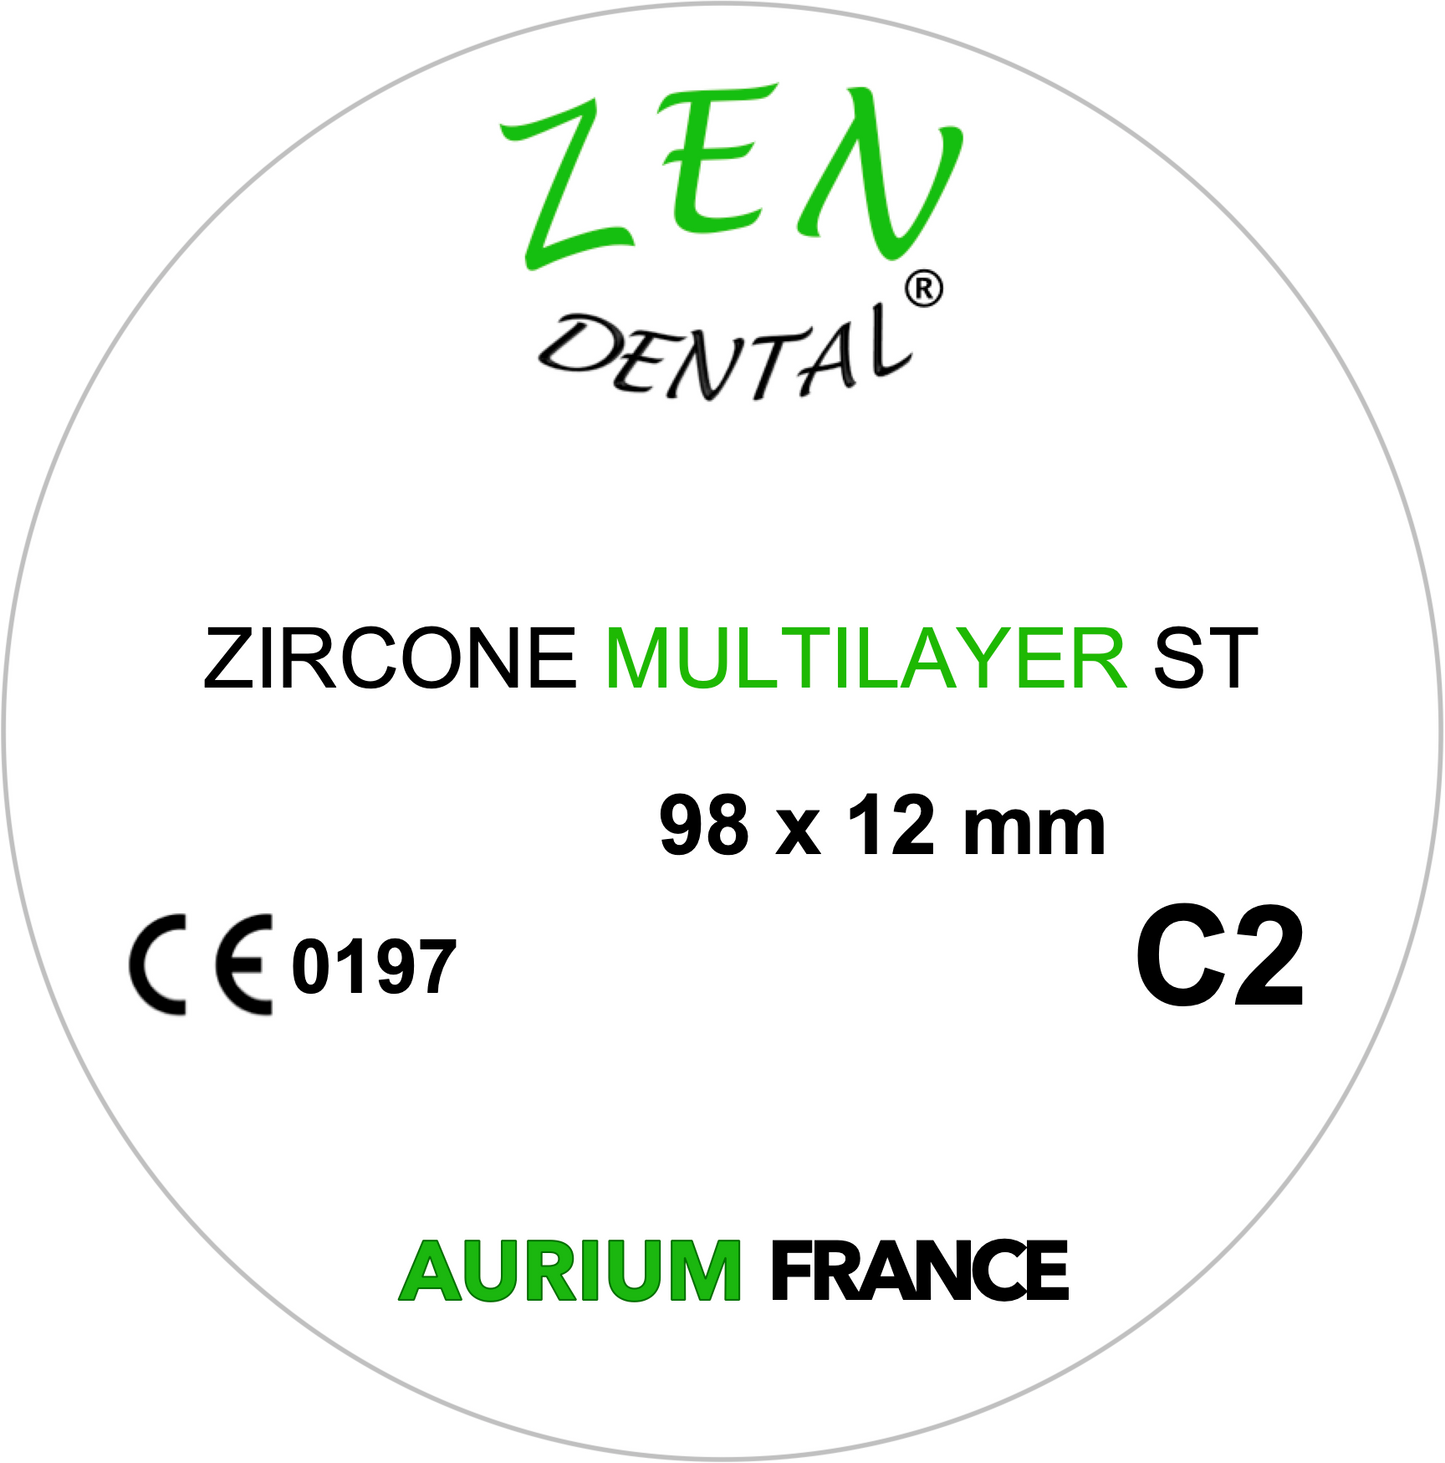 Zircone Multilayer ZEN DENTAL Promotion